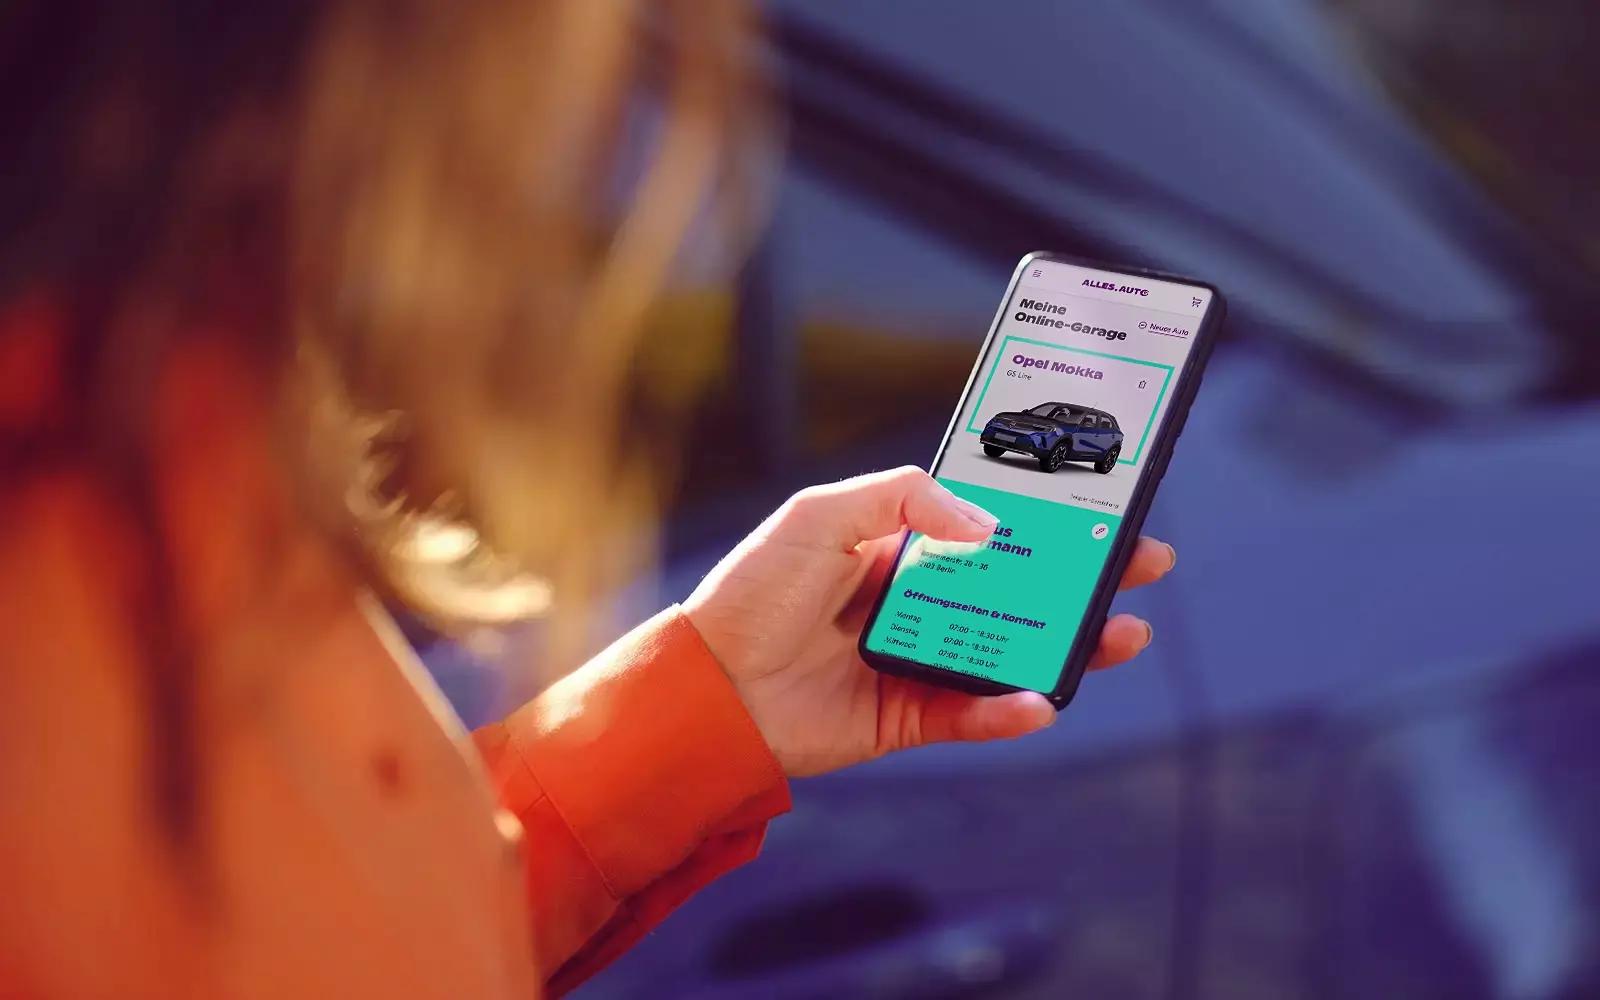 Frau will ihr Auto verkaufen und betrachtet auf einem Smartphone die Online-Garage mit einem blauen Opel Mokka.